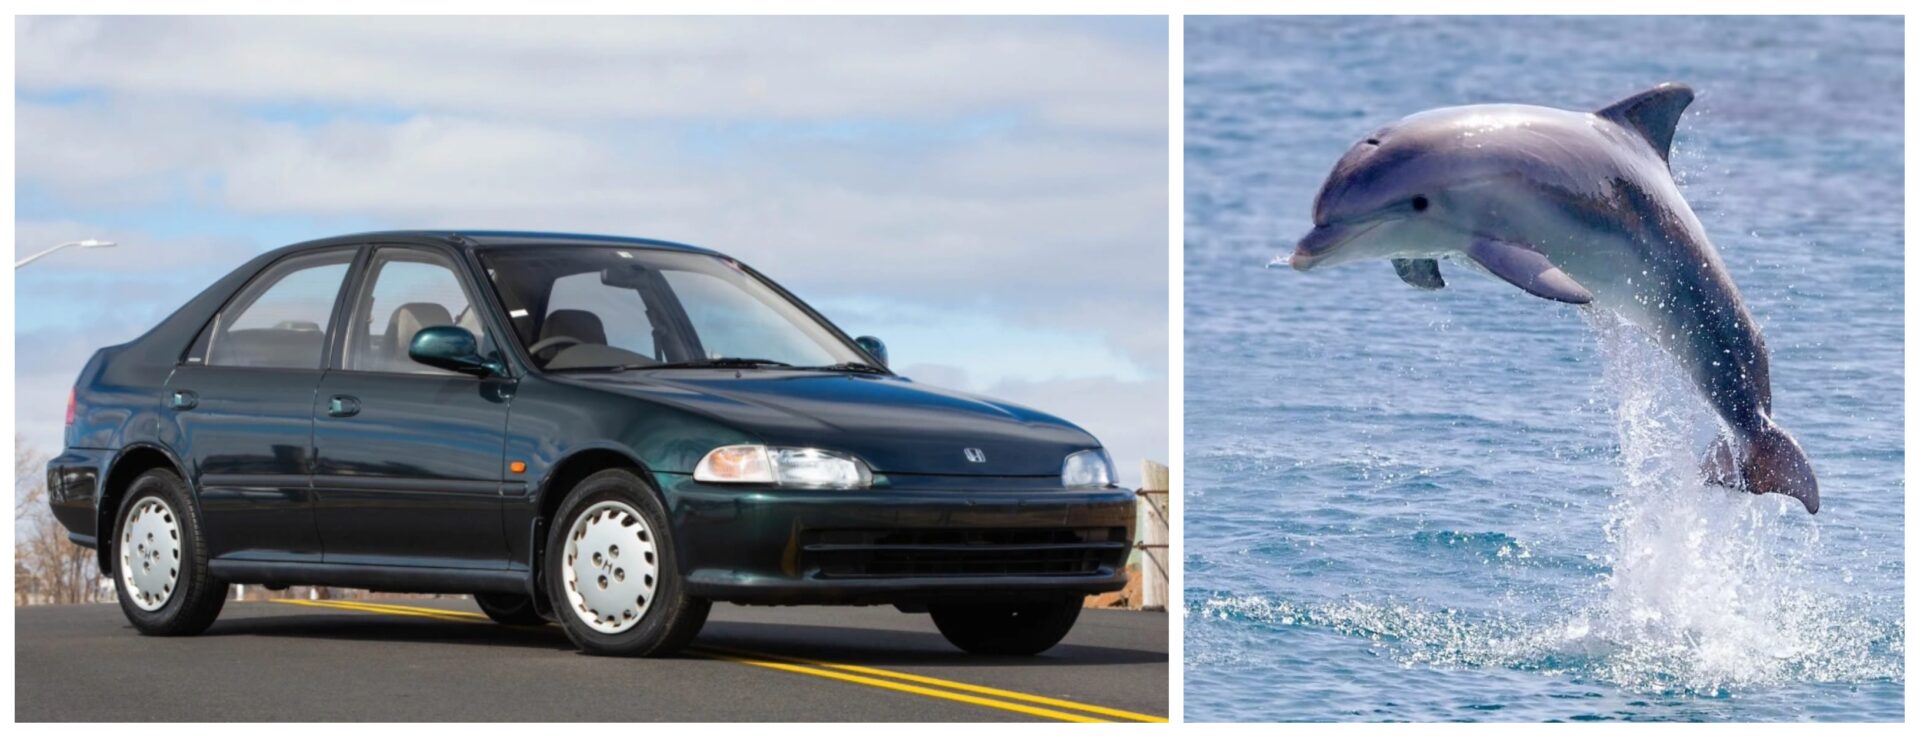 Honda Civic - Dolphin